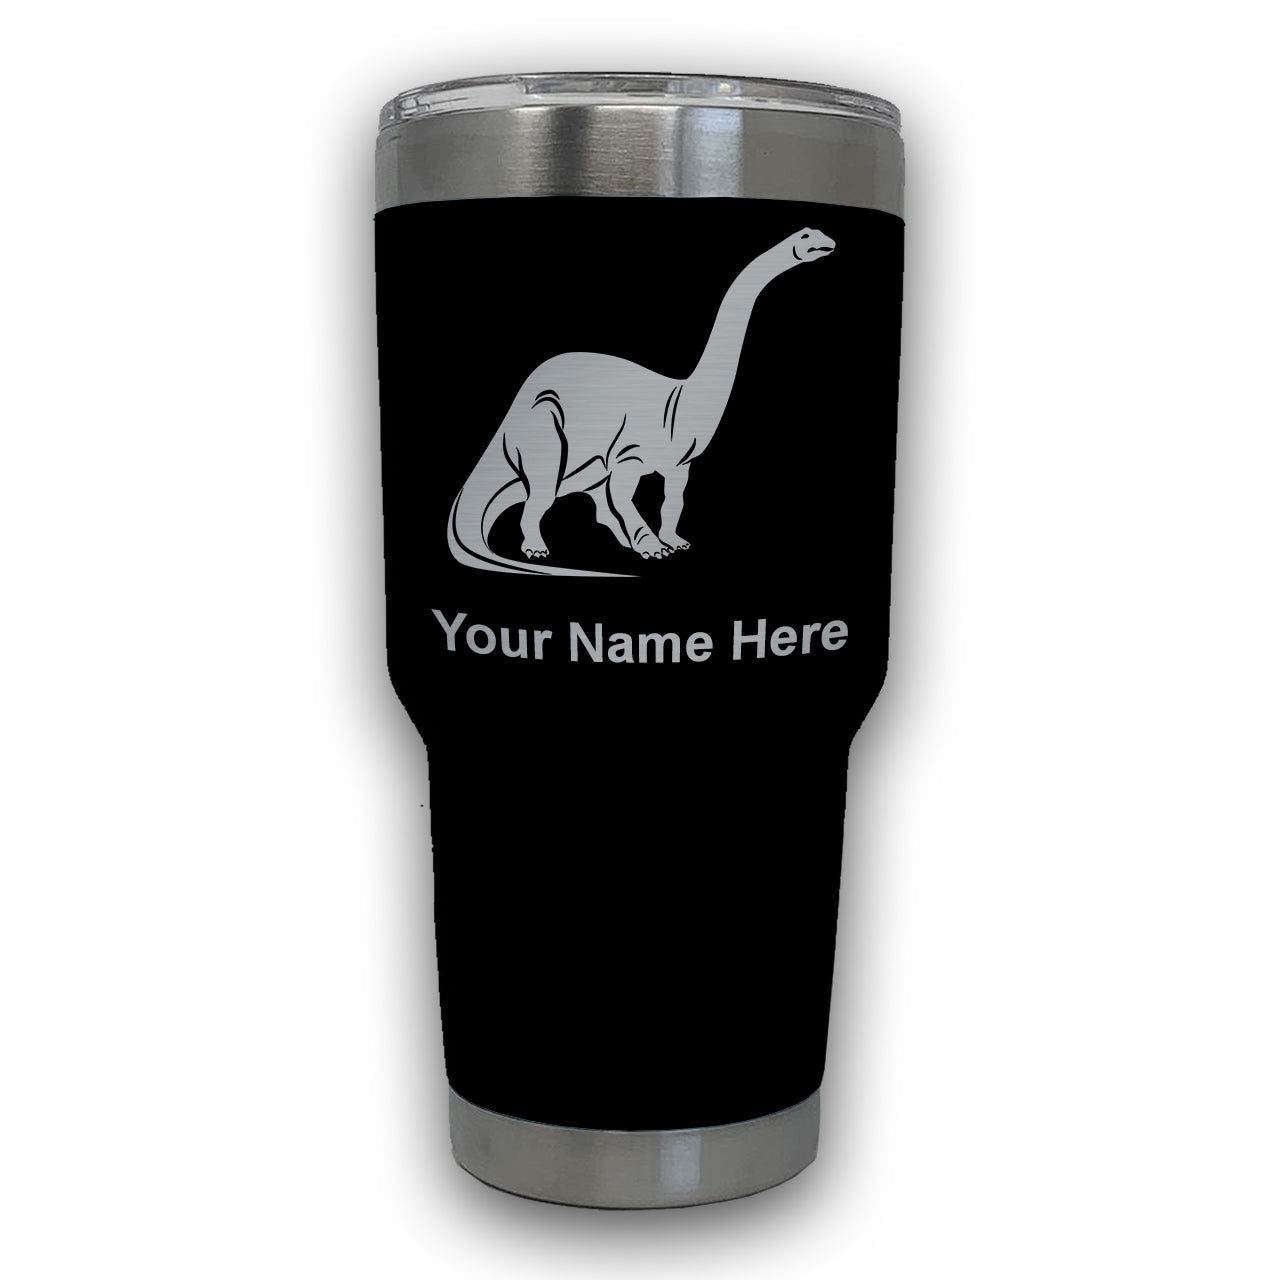 LaserGram 30oz Tumbler Mug, Brontosaurus Dinosaur, Personalized Engraving Included